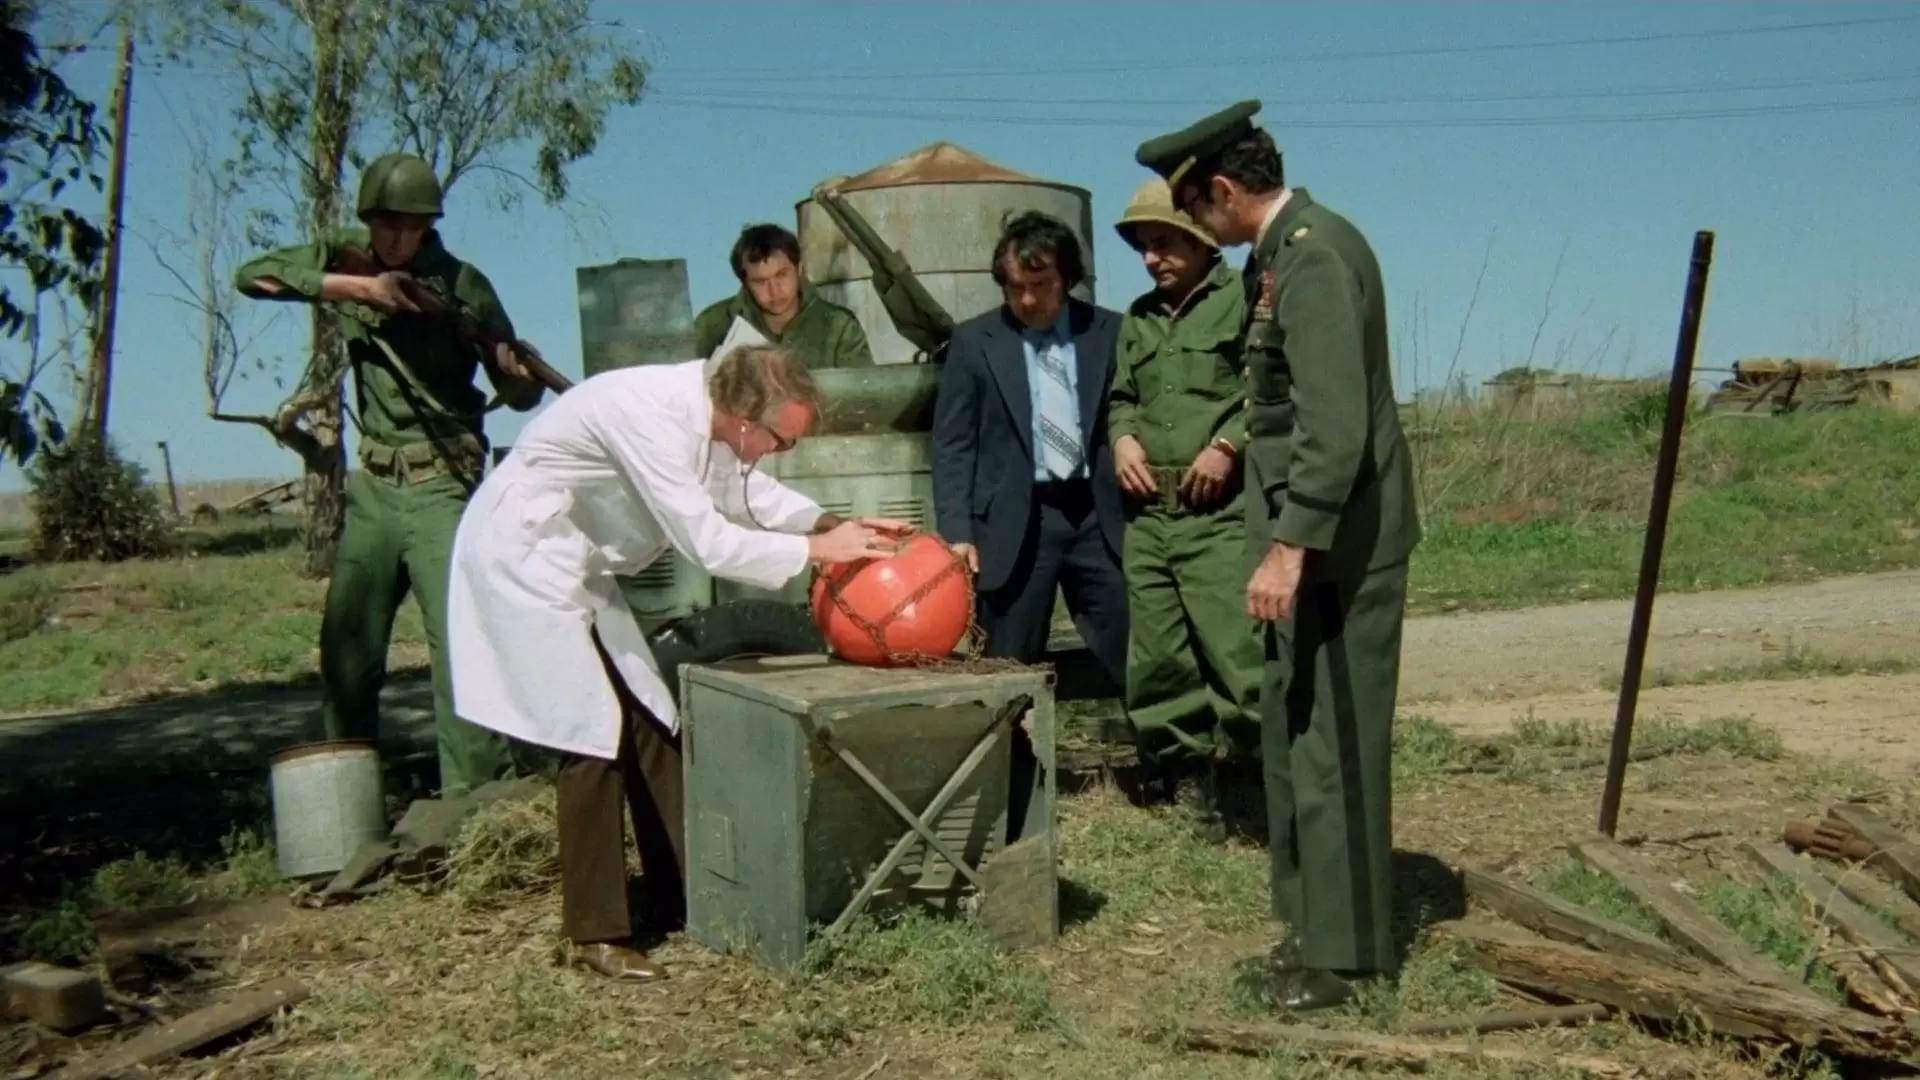 دانلود فیلم Attack of the Killer Tomatoes! 1978